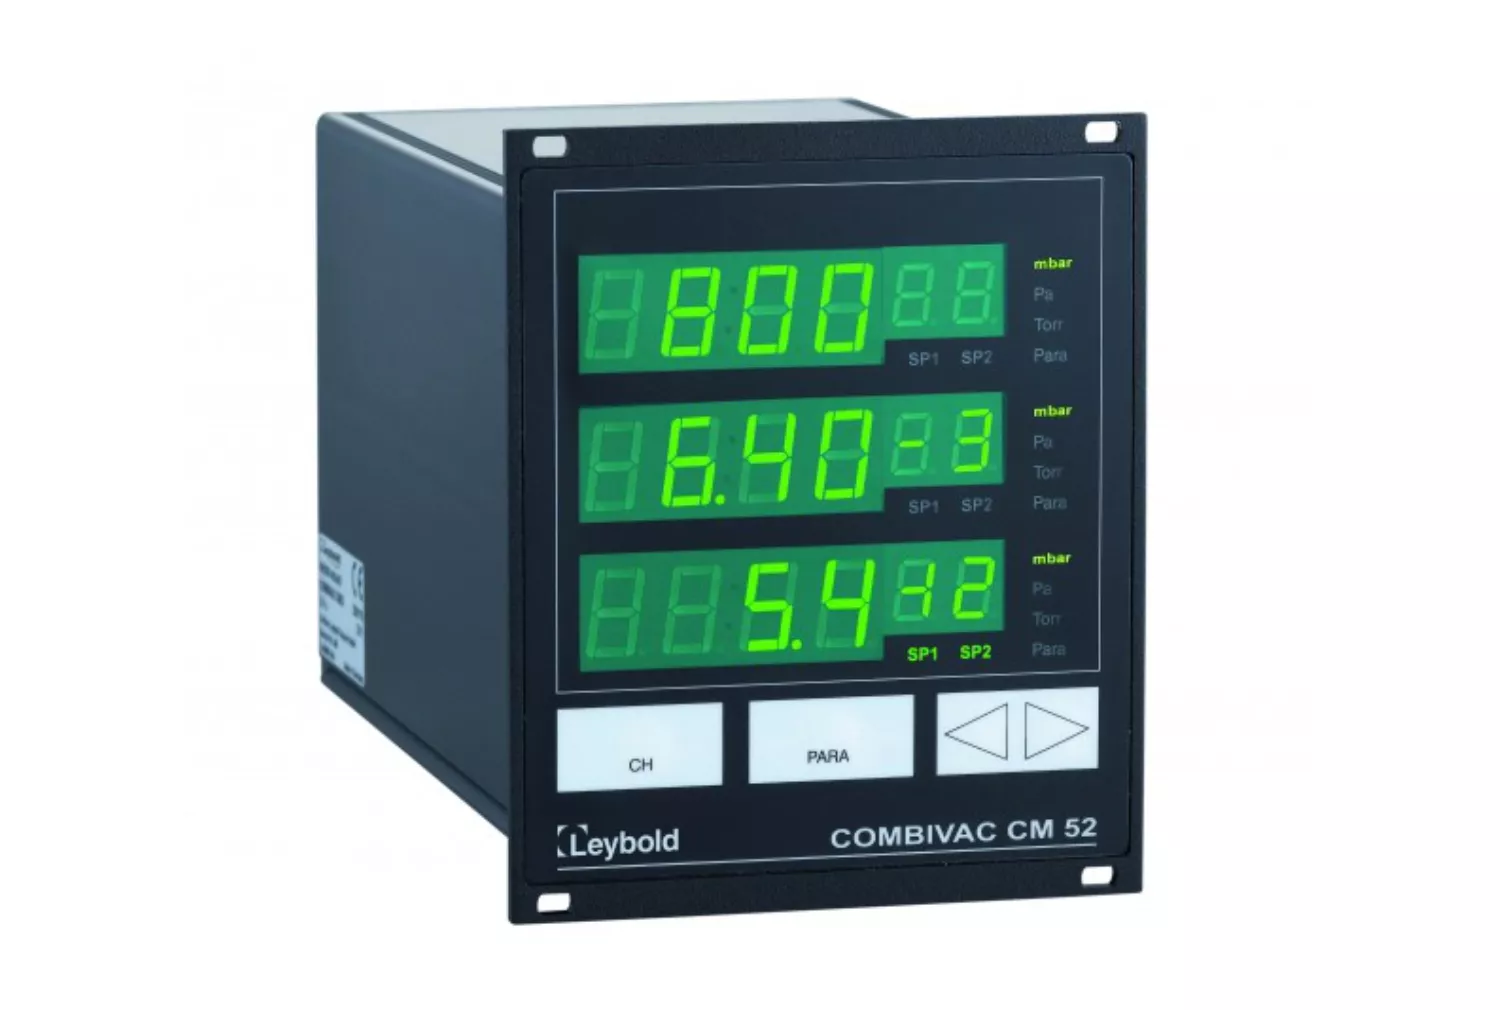 Купить в АО Вакууммаш ✓ Графический контроллер COMBIVAC CM 52 Leybold по цене производителя